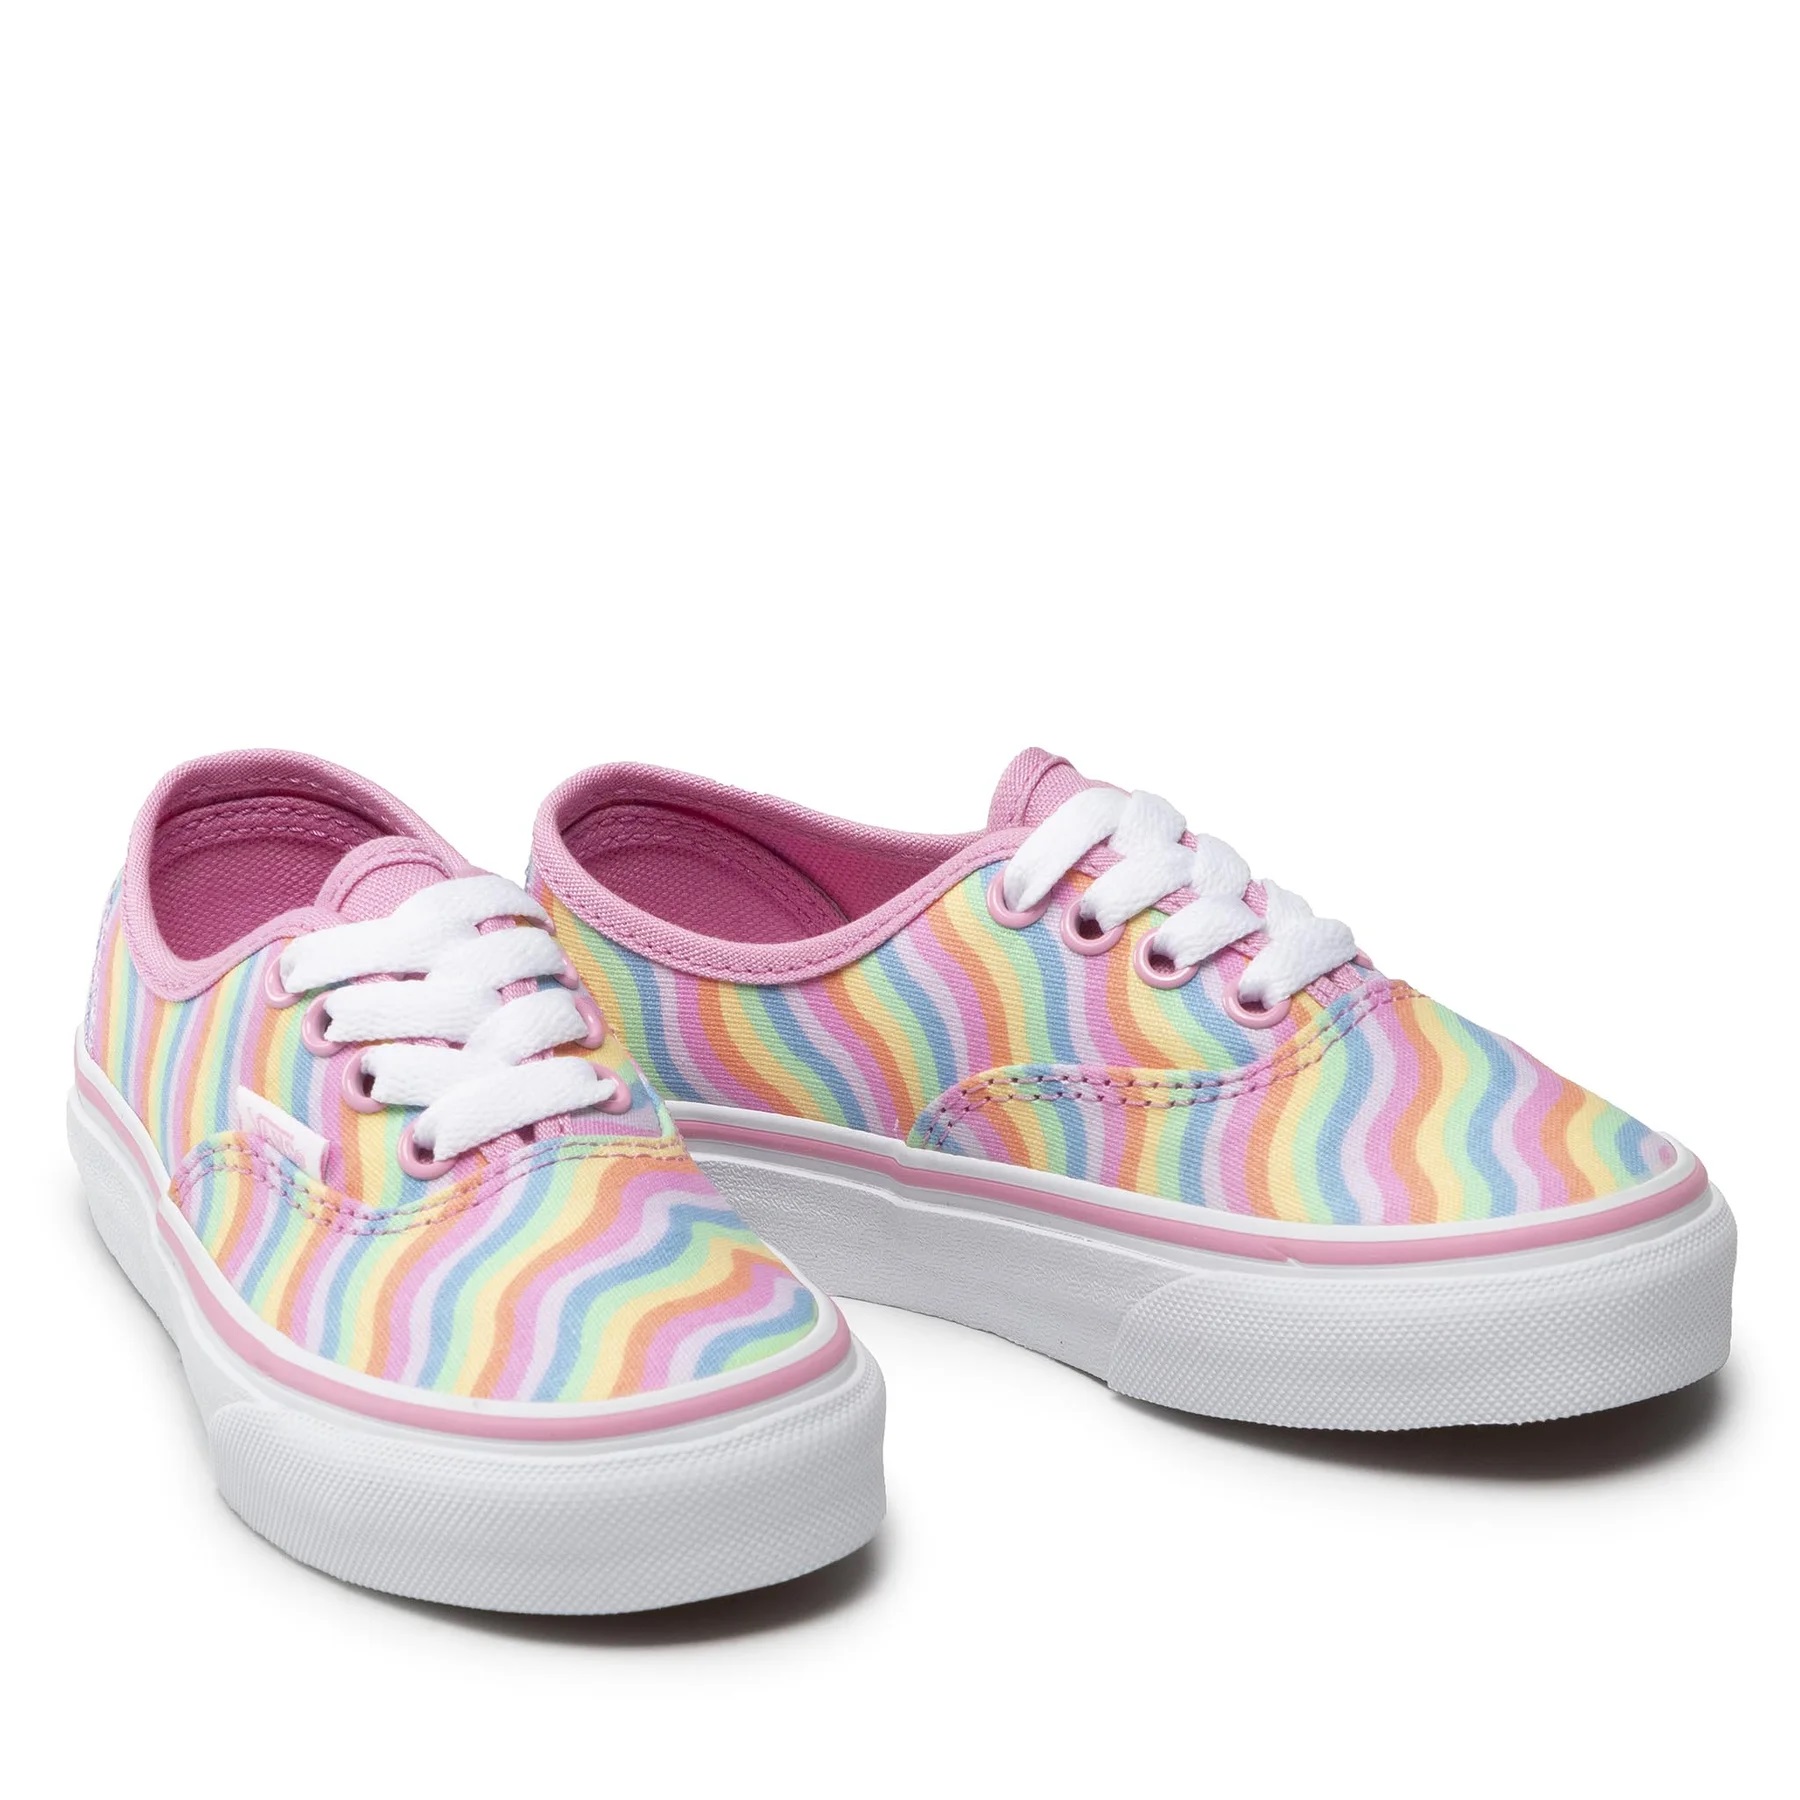 Zapatillas deportivas infantiles Vans Kids Wavy Rainbow Begonia por sólo 24,20€ ¡¡56% de descuento!!